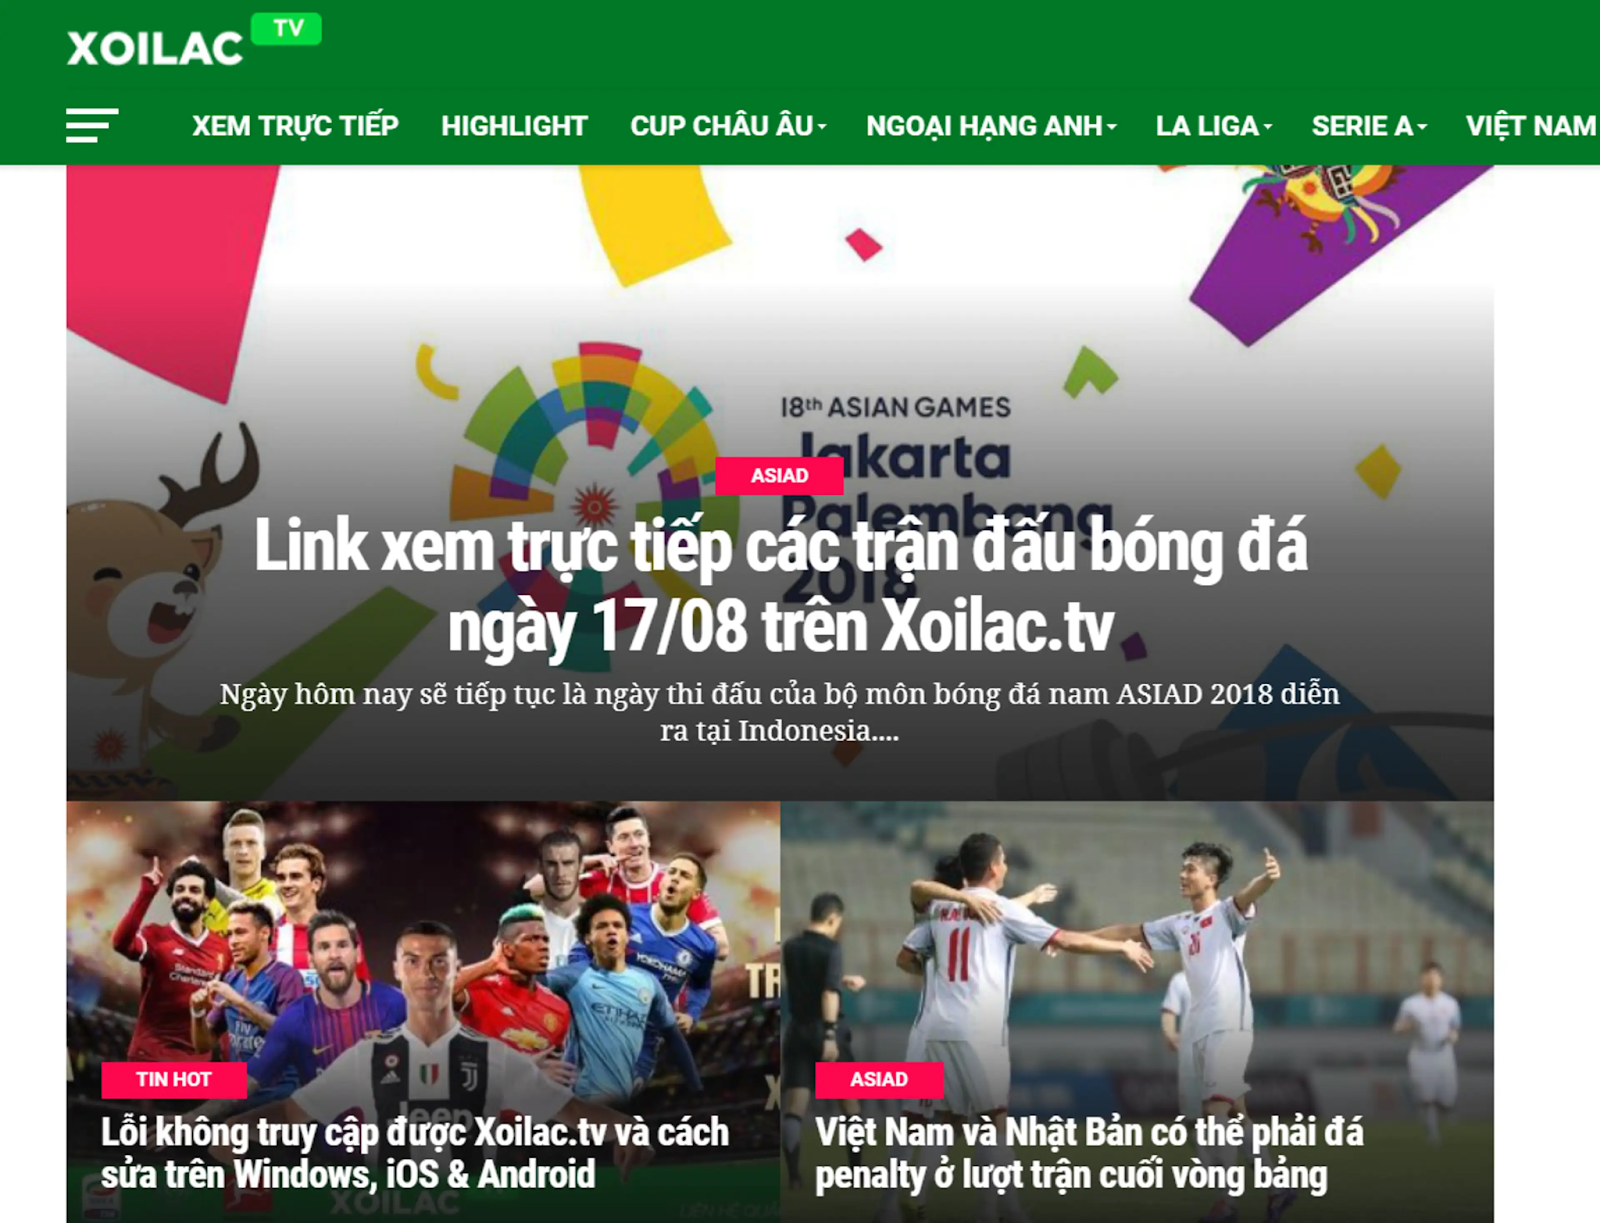 Hướng dẫn cách lấy link chuẩn để xem bóng đá trực tuyến tại Xoilac